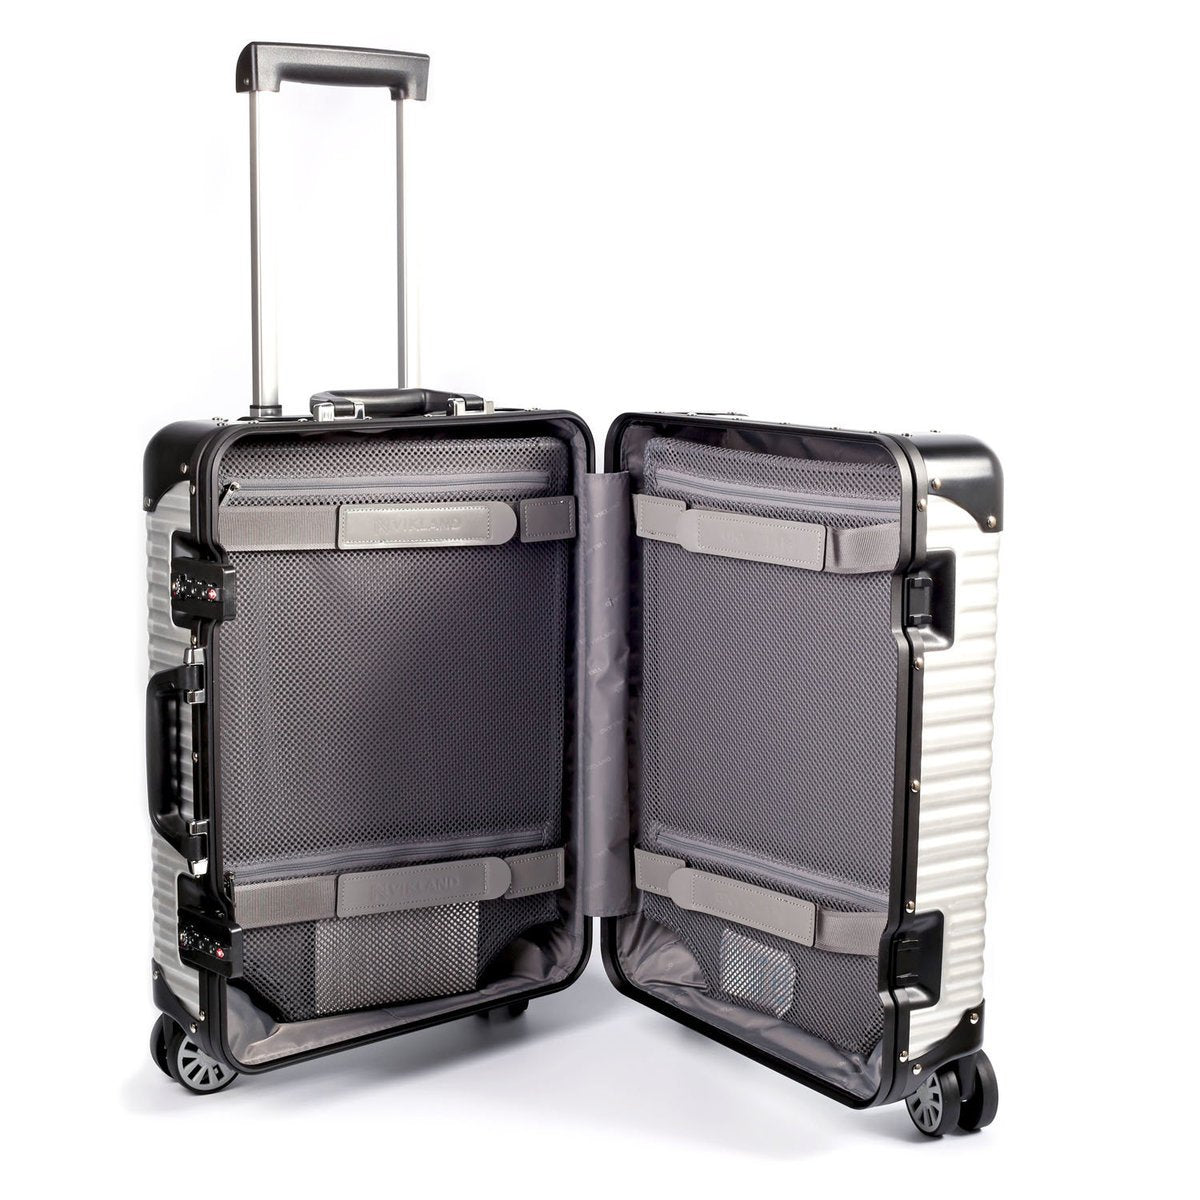 Lanzzo Norman (Silver) 62401.24 Lanzzo 諾曼系列銀白色24吋旅行行李箱 62401.24